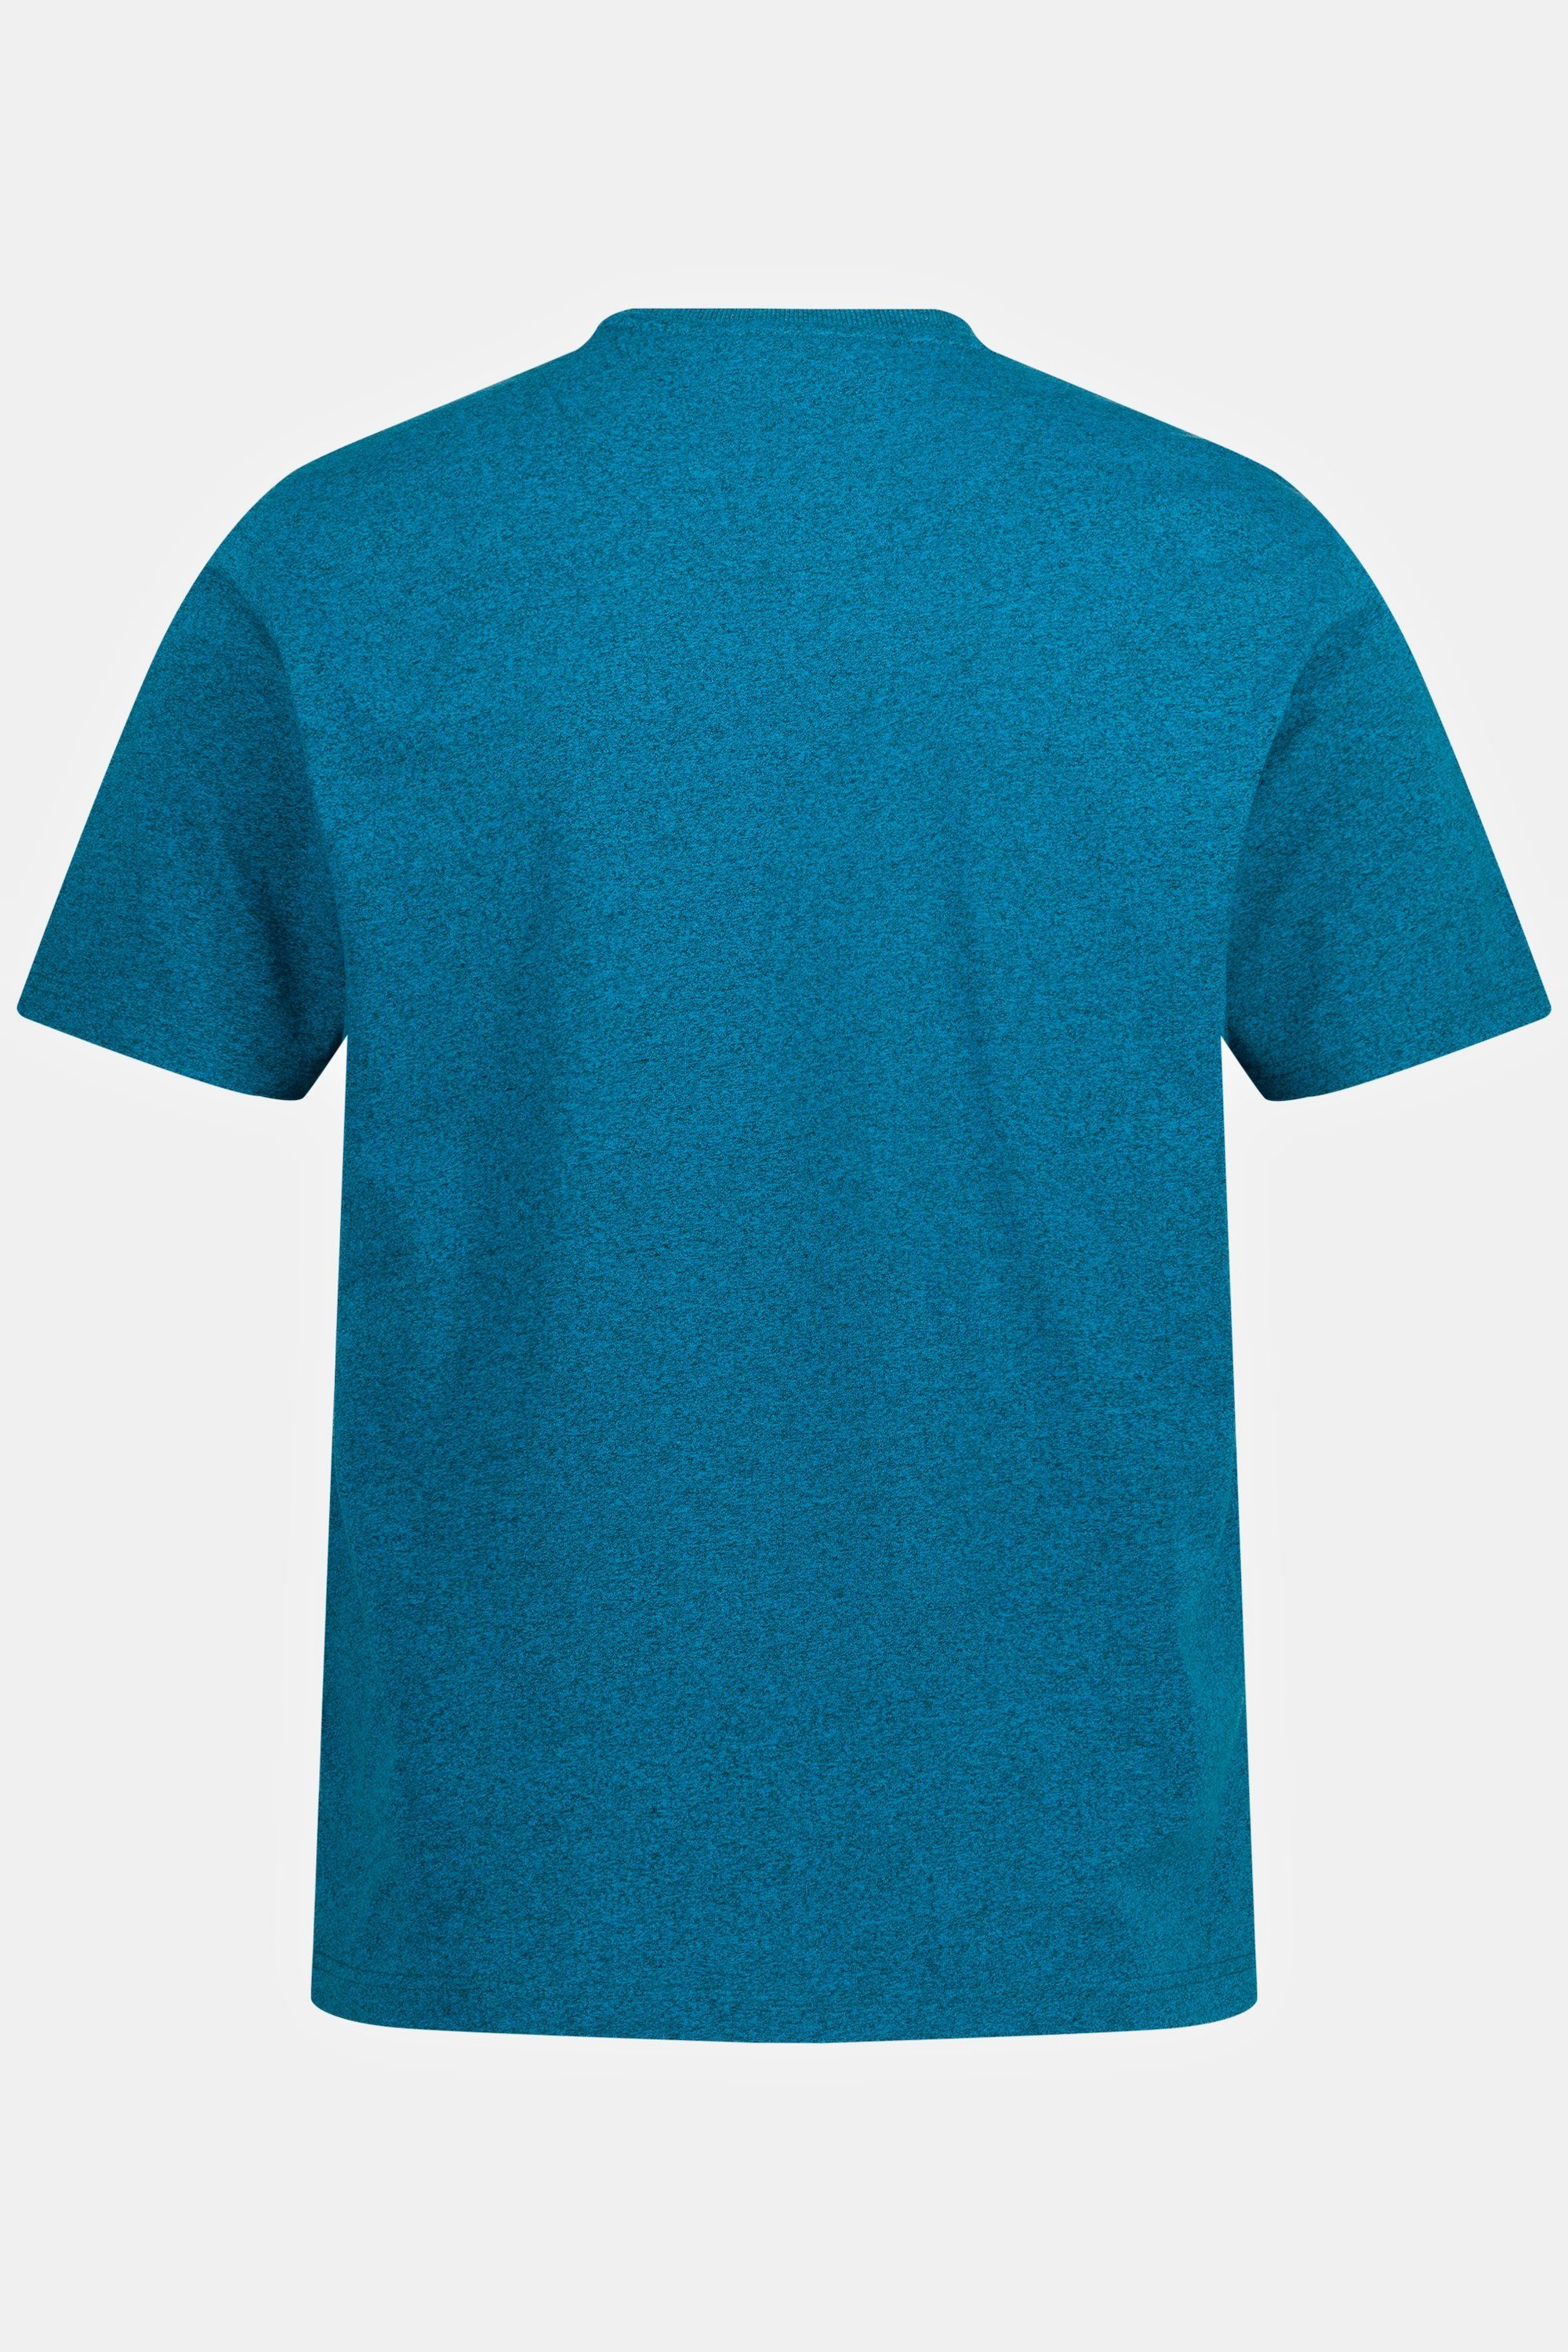 MYRO T-Shirt JP1880 Print T-Shirt Halbarm Melange-Jersey